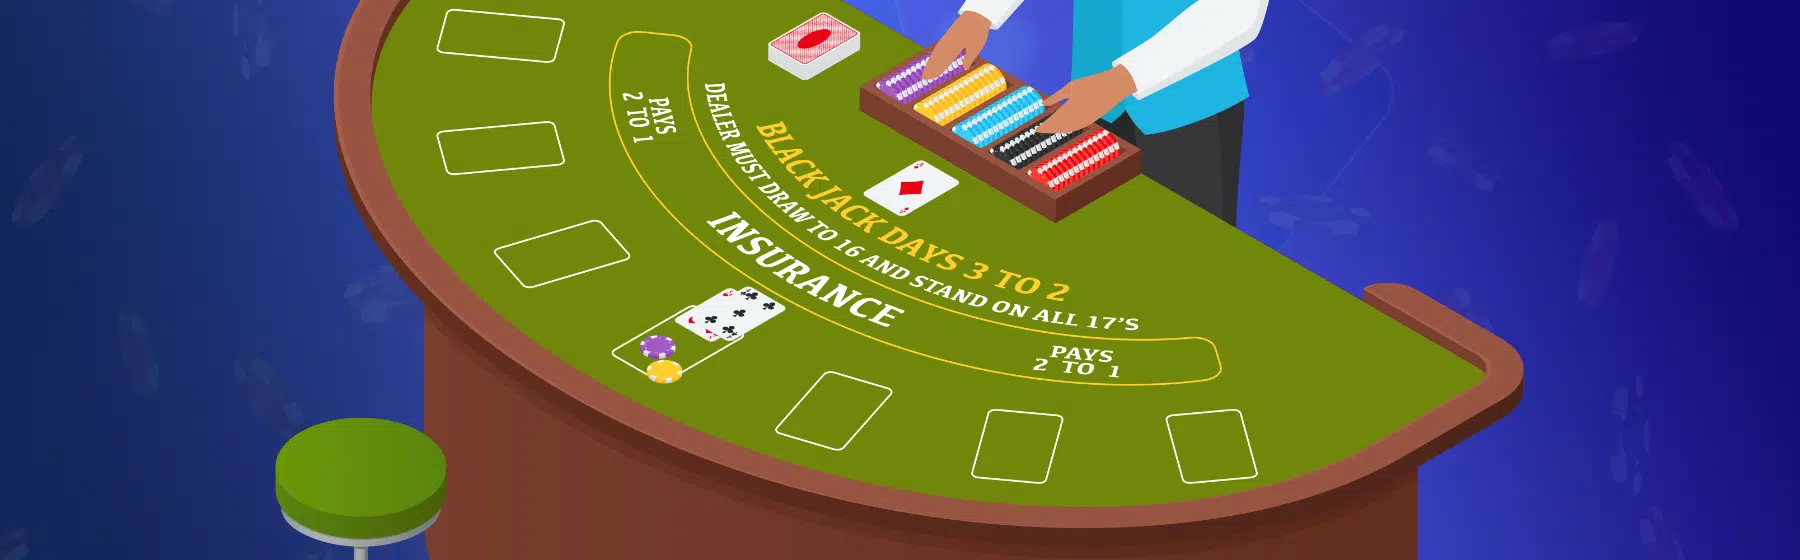 blackjack table with dealer